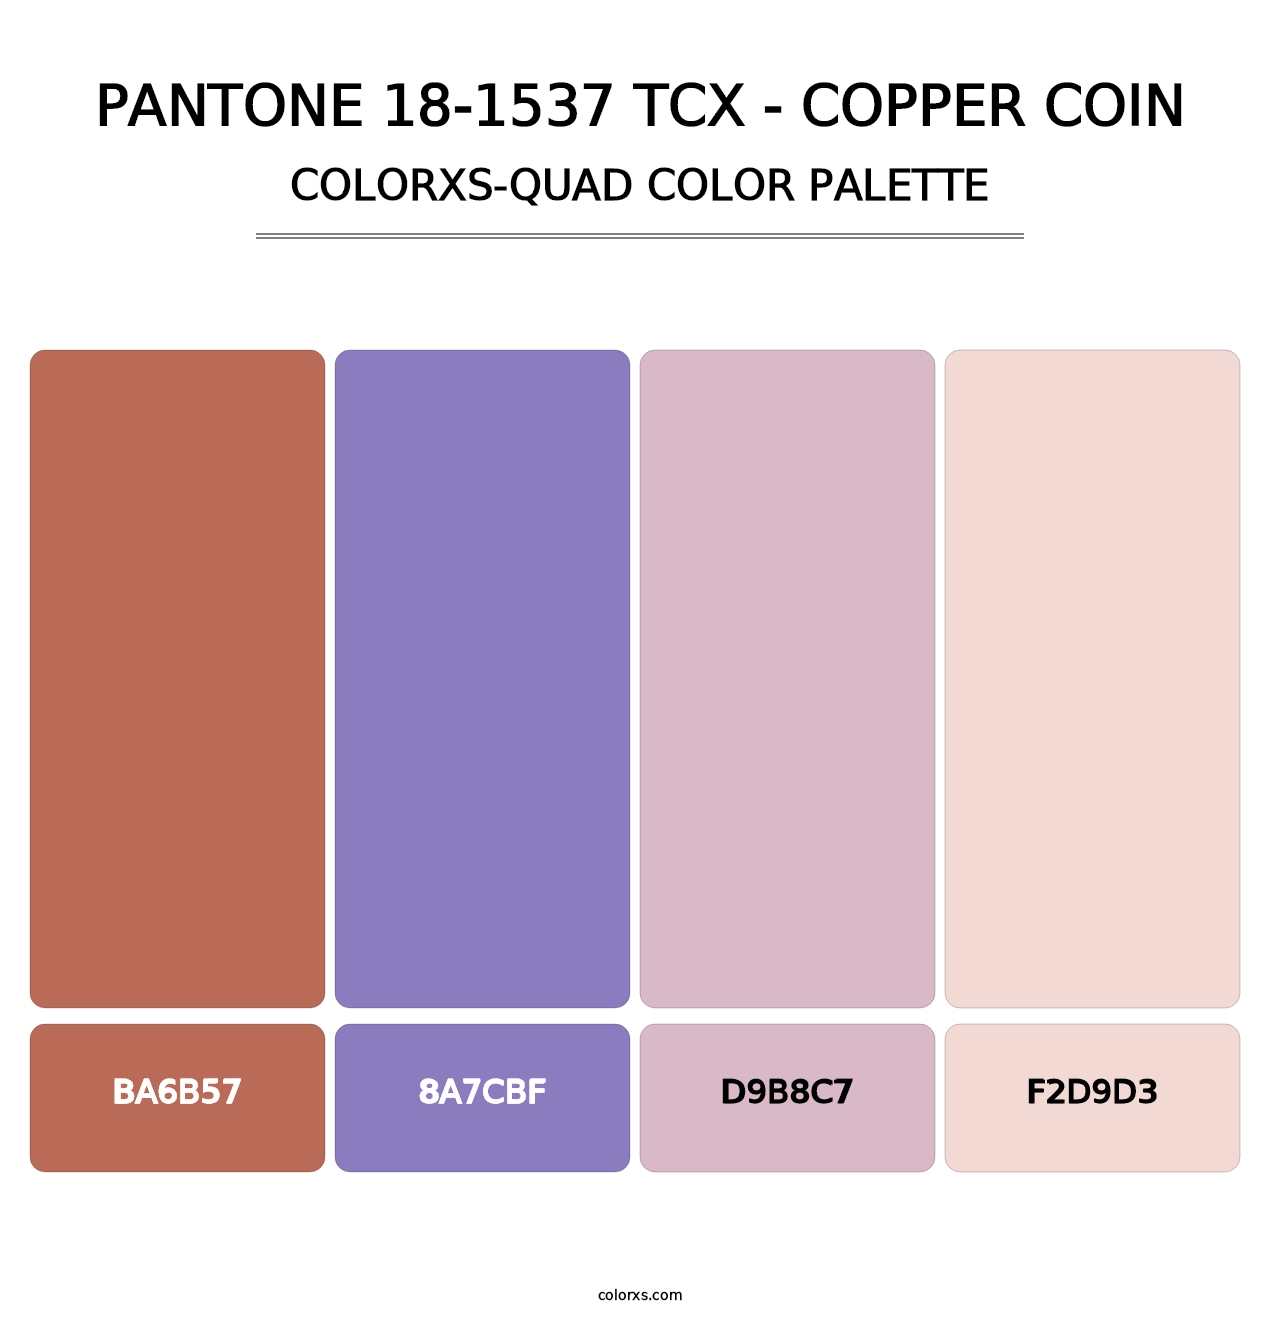 PANTONE 18-1537 TCX - Copper Coin - Colorxs Quad Palette